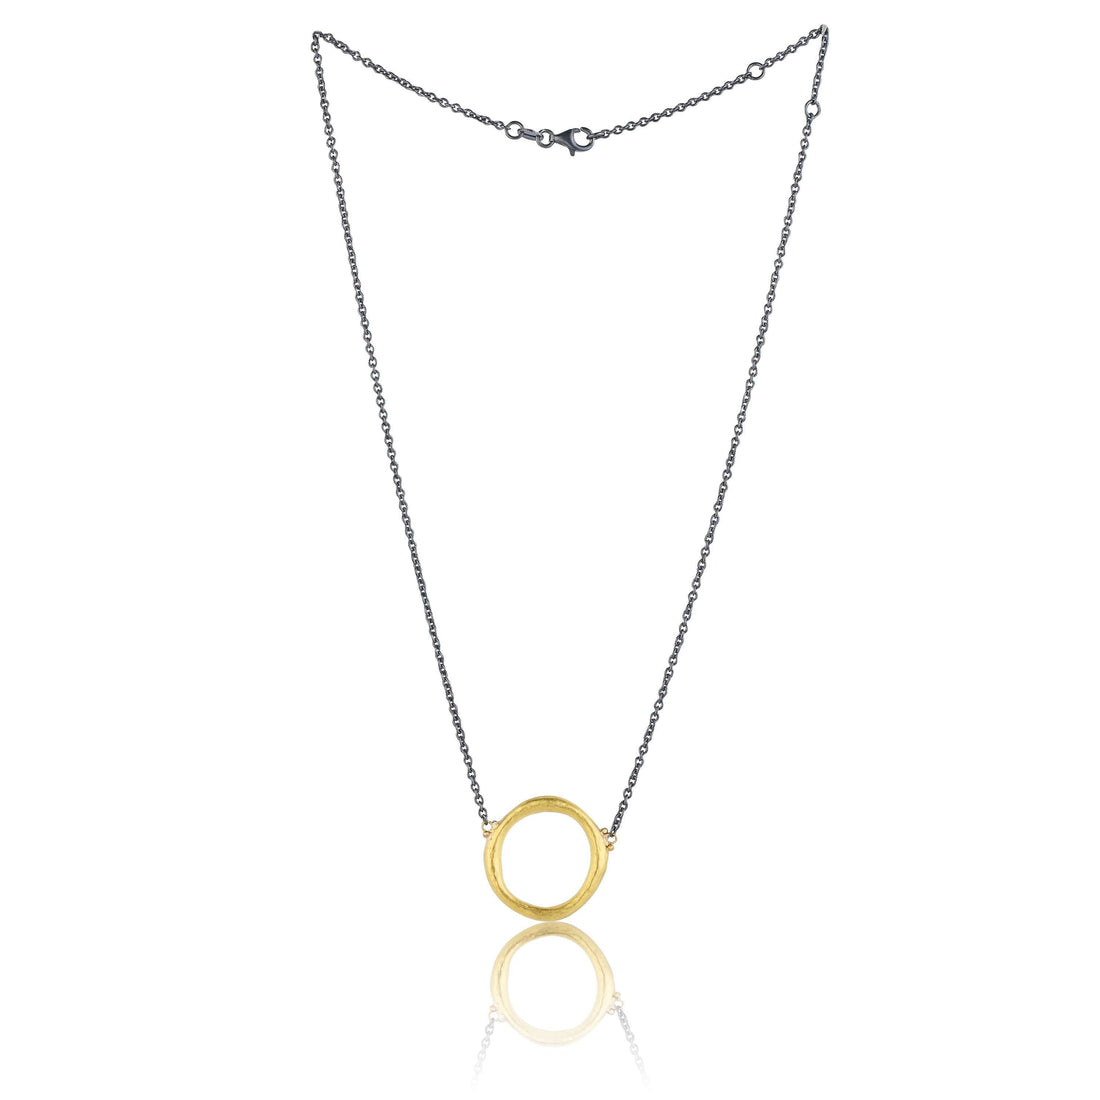 Lika Behar 24k Gold & Oxidized Sterling Silver Circle Pendant